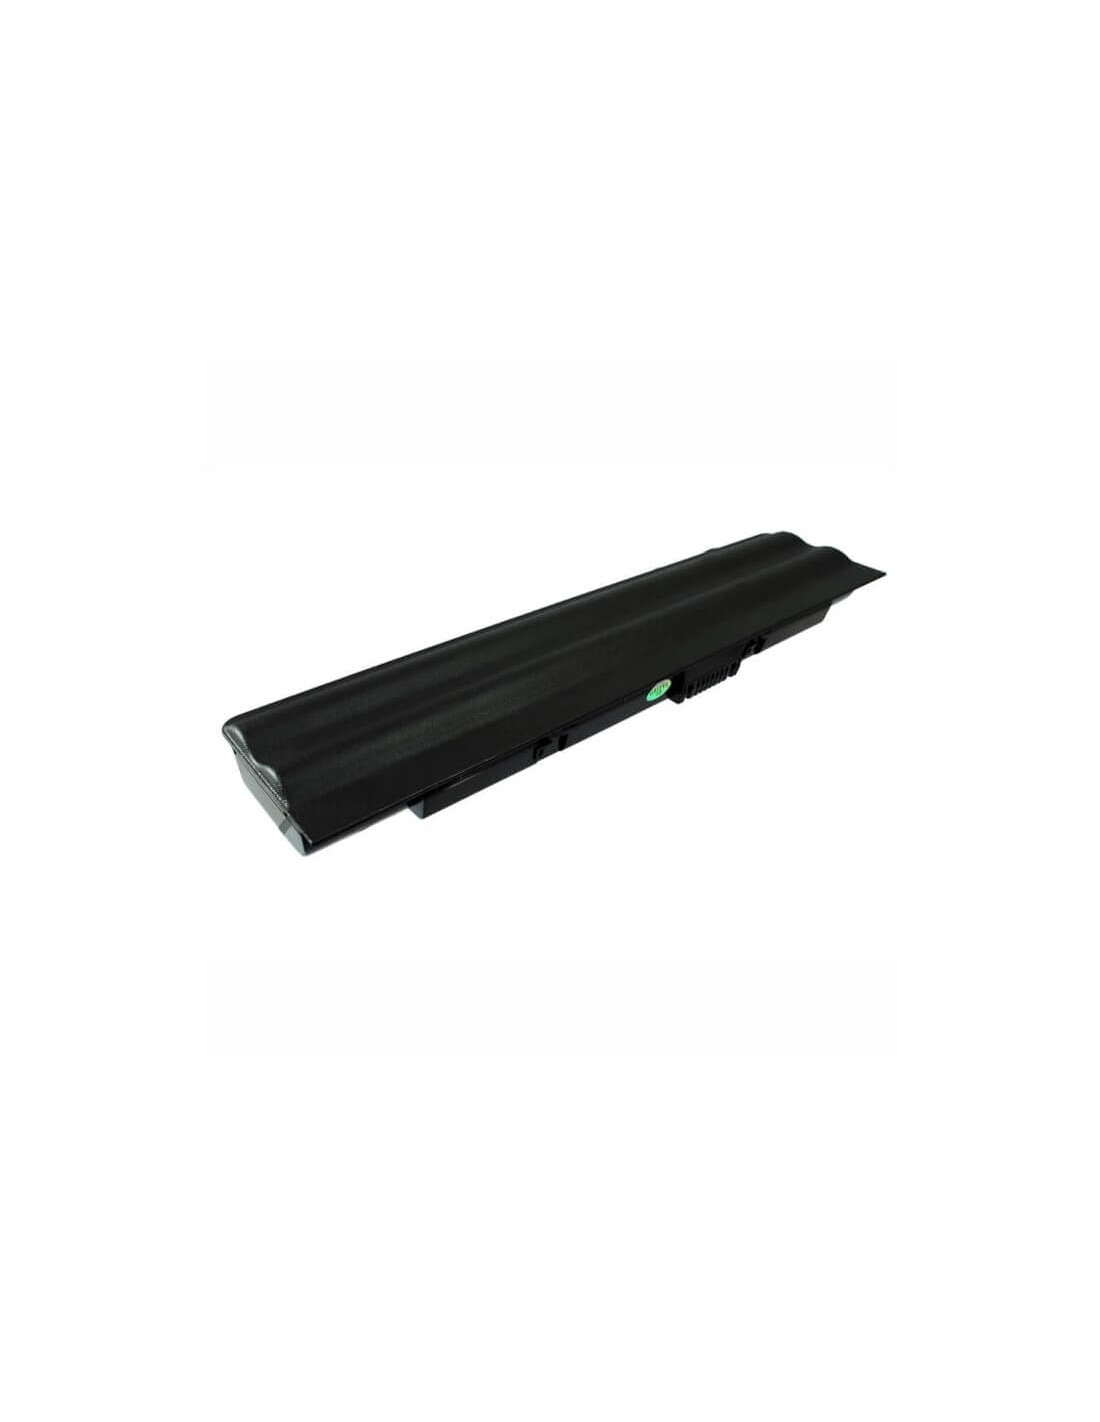 Black Battery for Uniwill E11 11.1V, 4400mAh - 48.84Wh